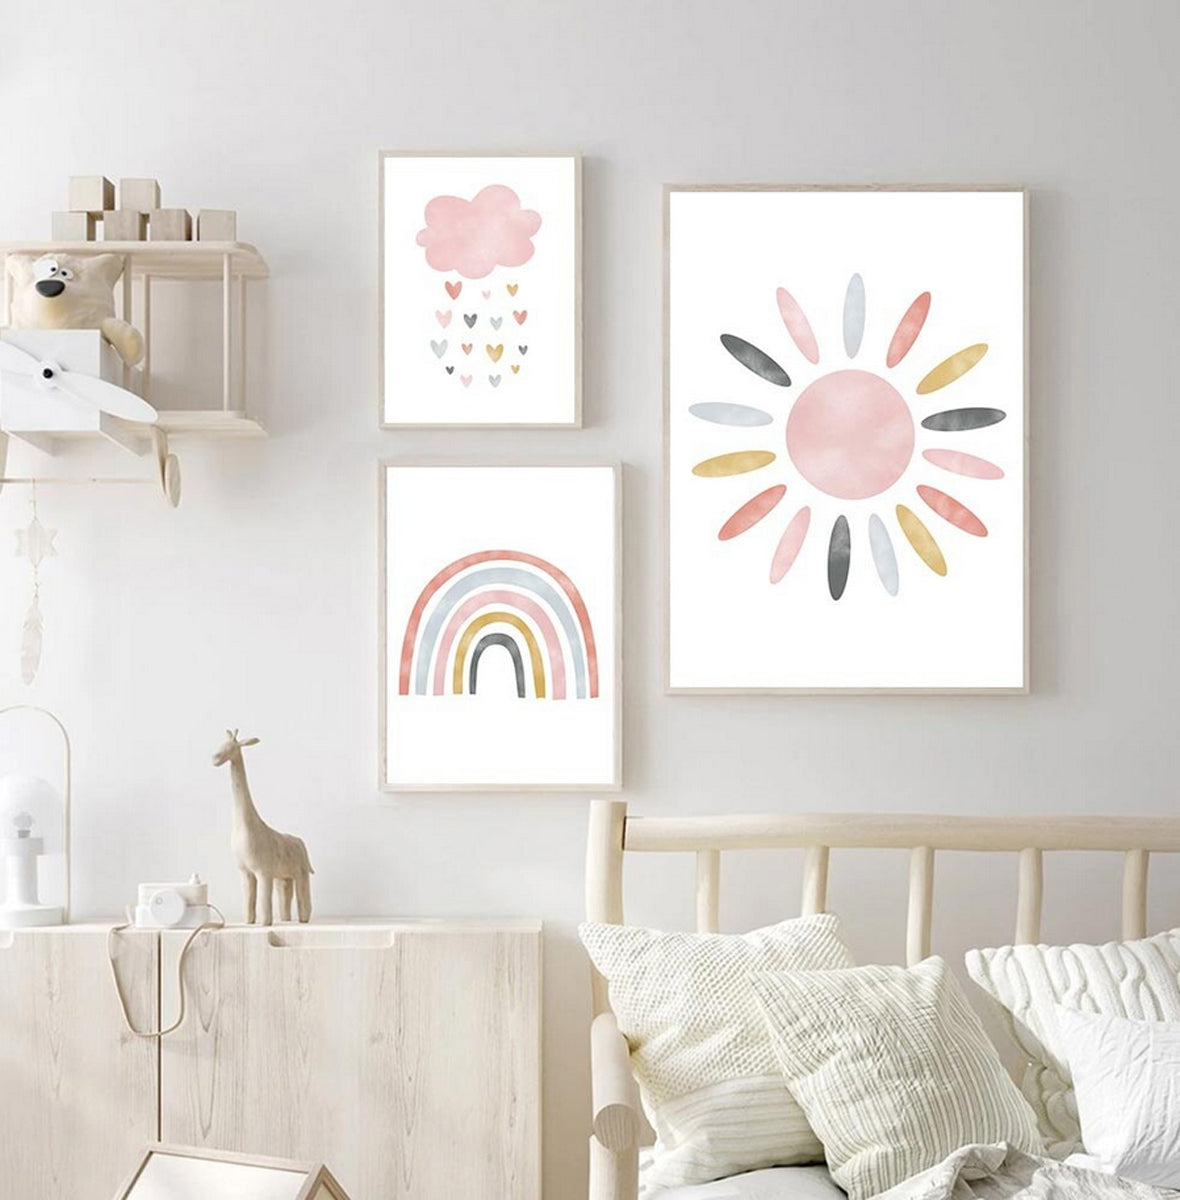 TPFLiving Poster Leinwand / Sonne, Wolken, Herzen, Regenbogen für Kinderzimmer - Auch im 3er Set / Verschiedene Größen - OHNE Rahmen - Modell h258